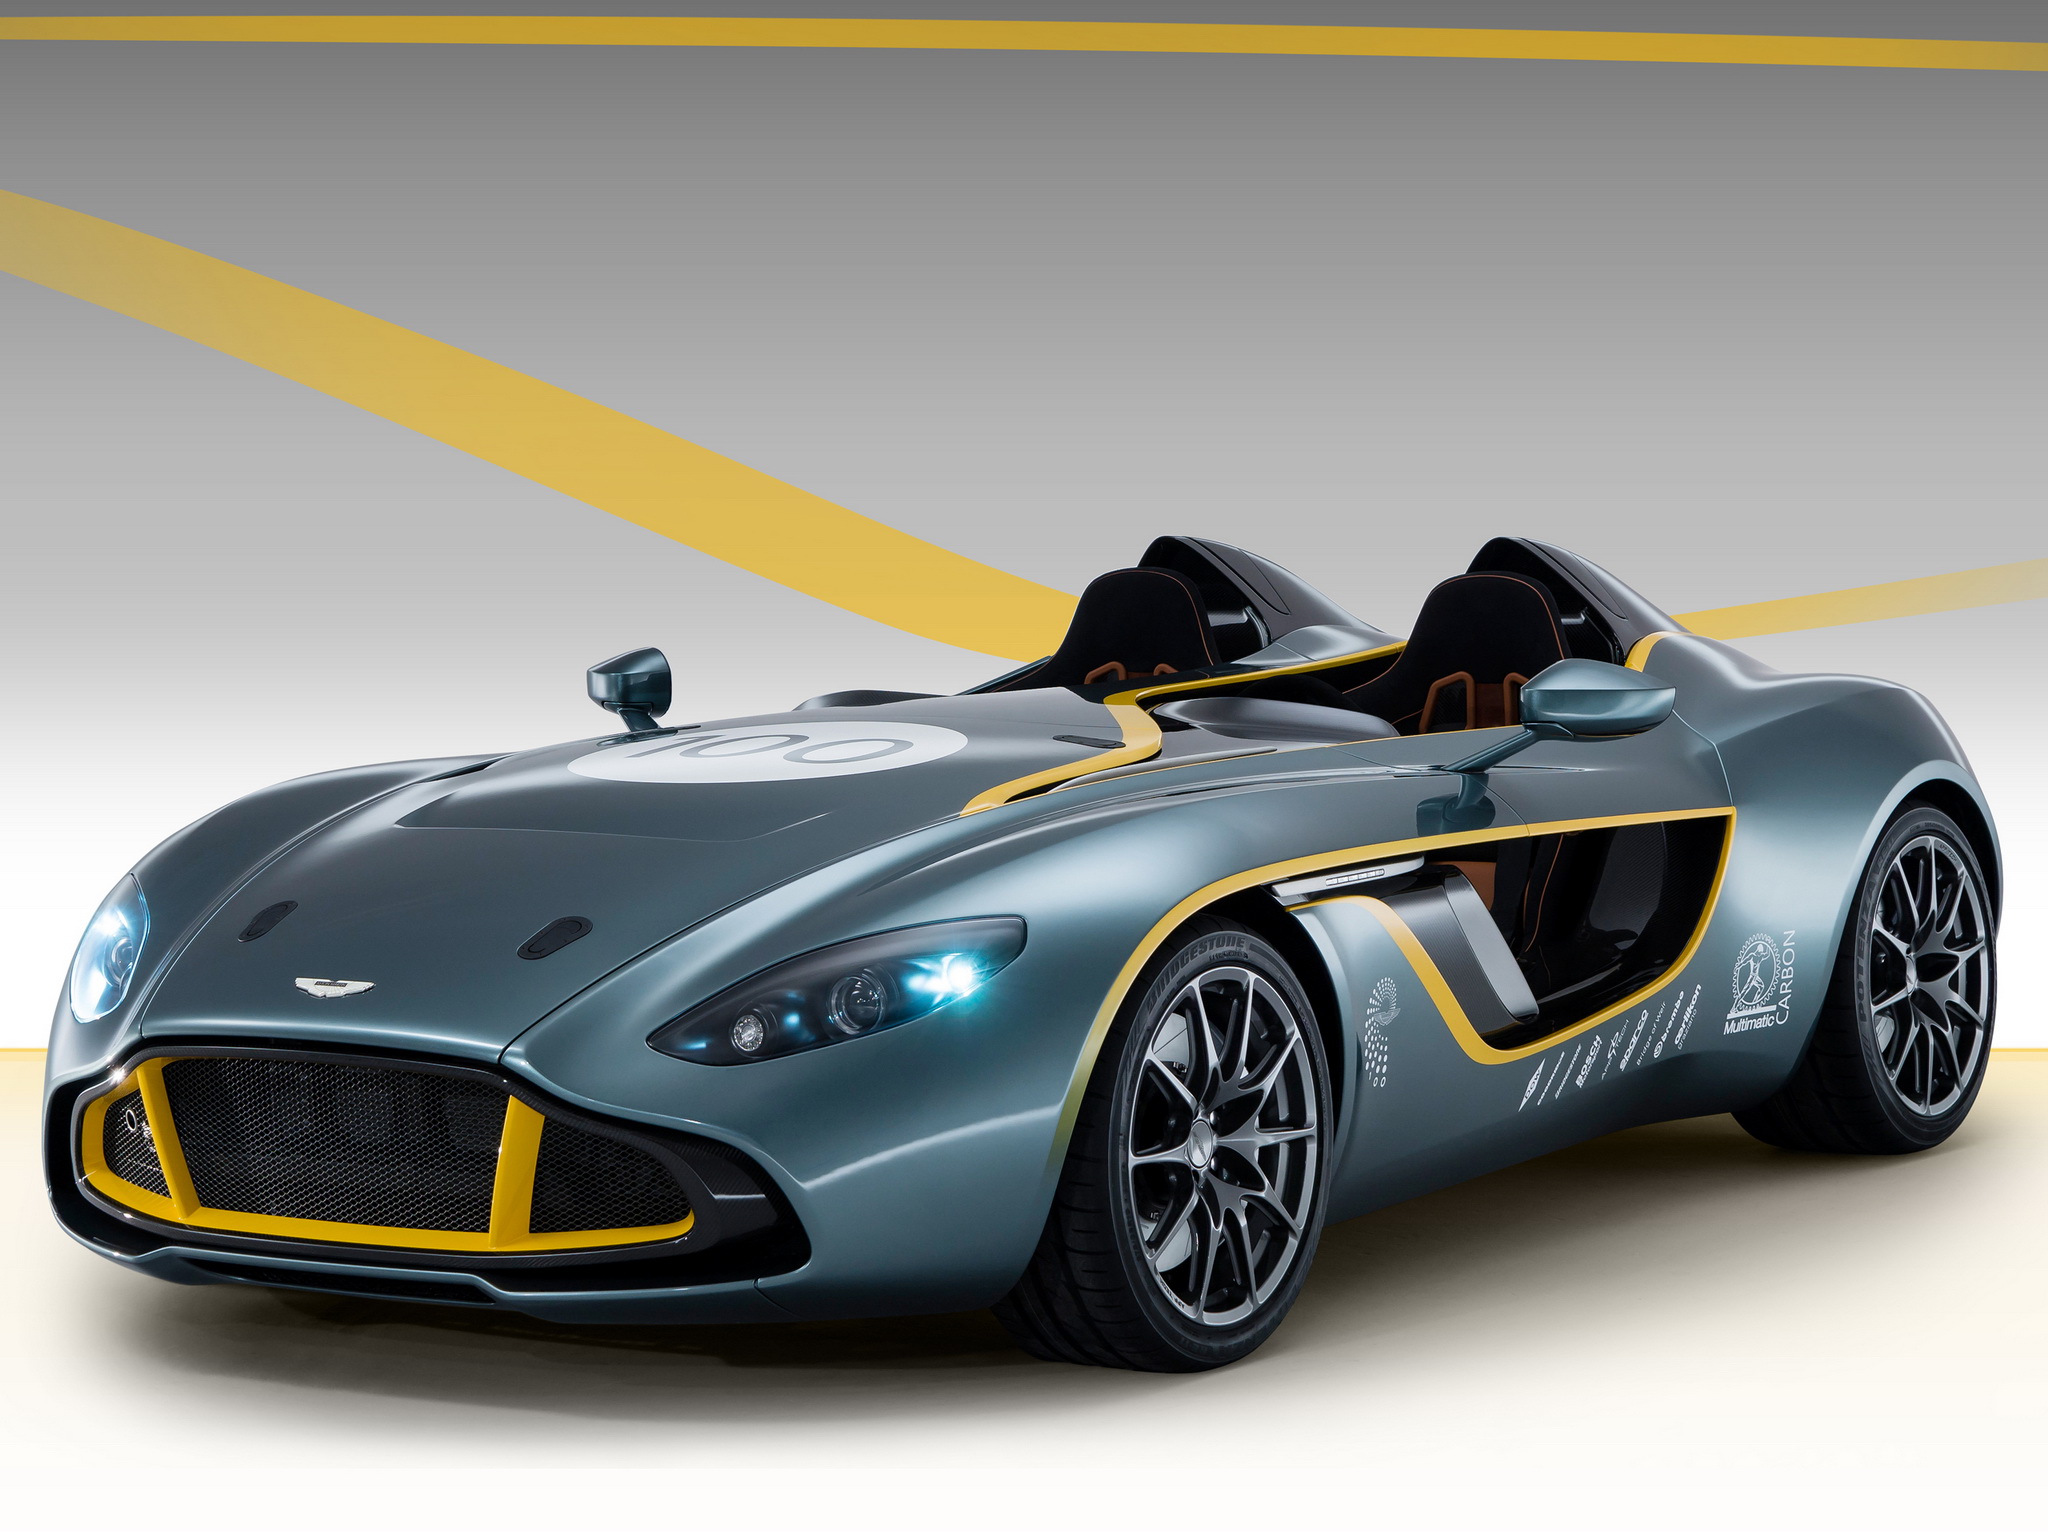 Descarga gratuita de fondo de pantalla para móvil de 2013 Aston Martin Cc100 Speedster Concepto, Aston Martin, Auto Concepto, Vehículos, Coche.